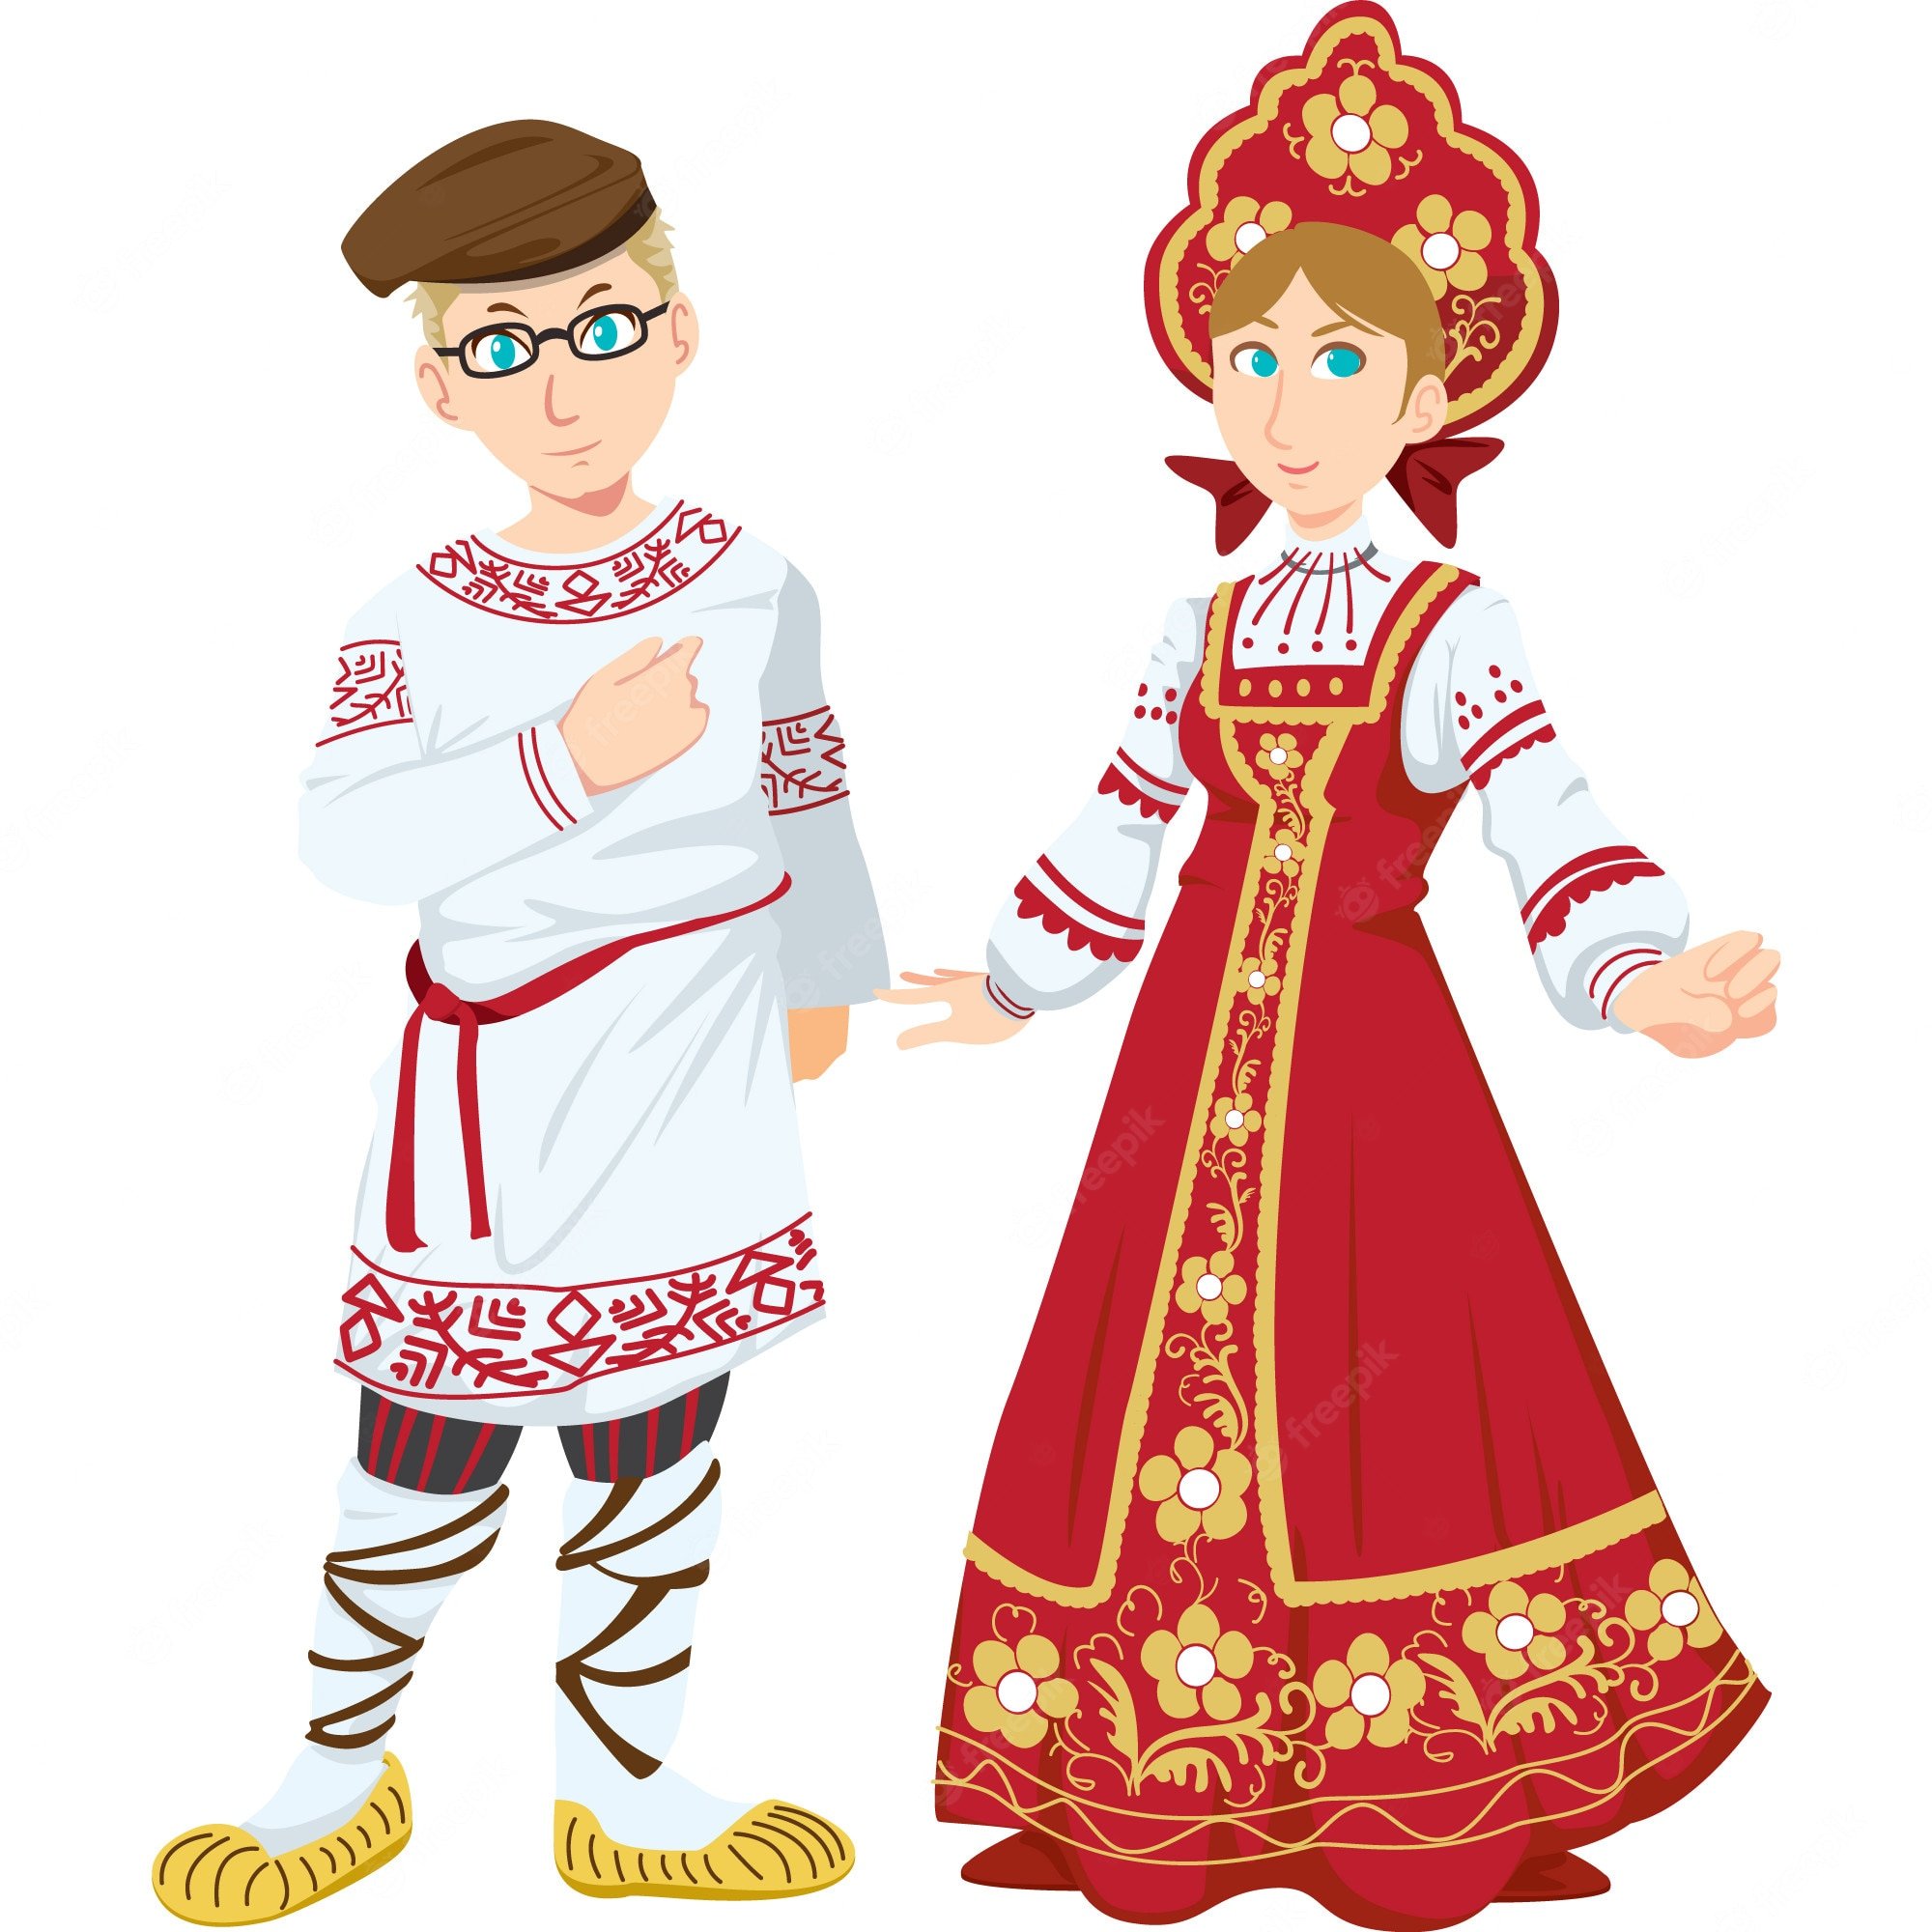 Парень и девушка в русских народных костюмах